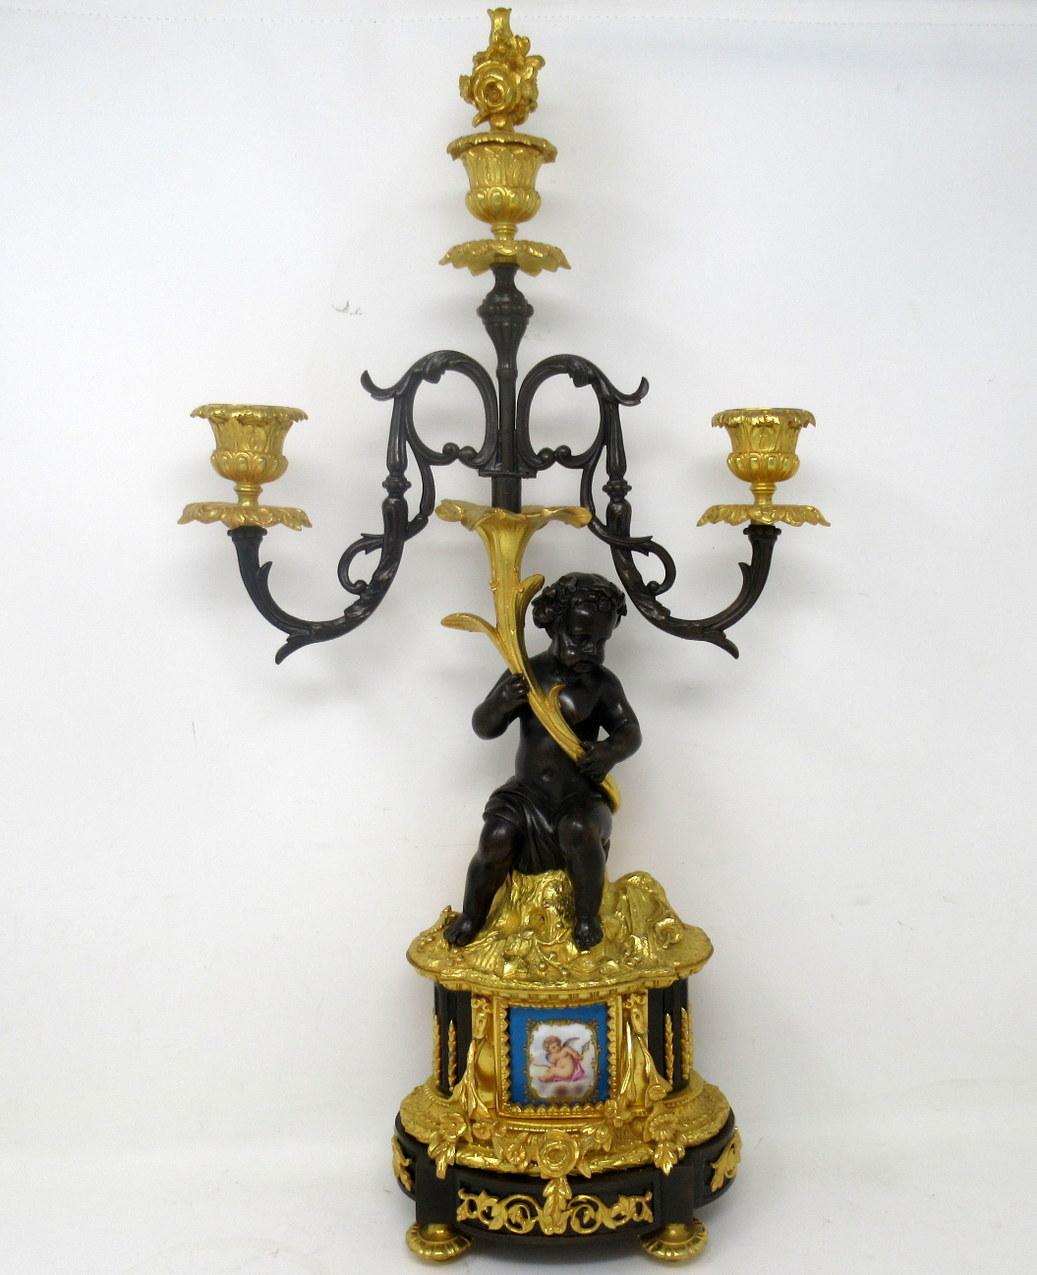 Une paire de candélabres de table ou de manteau à trois lumières en porcelaine de Sèvres, montés en bronze doré, d'une qualité exceptionnelle. Du début au milieu du XIXe siècle. 

Chacune d'elles est ornée de deux feuilles à enroulement et d'une